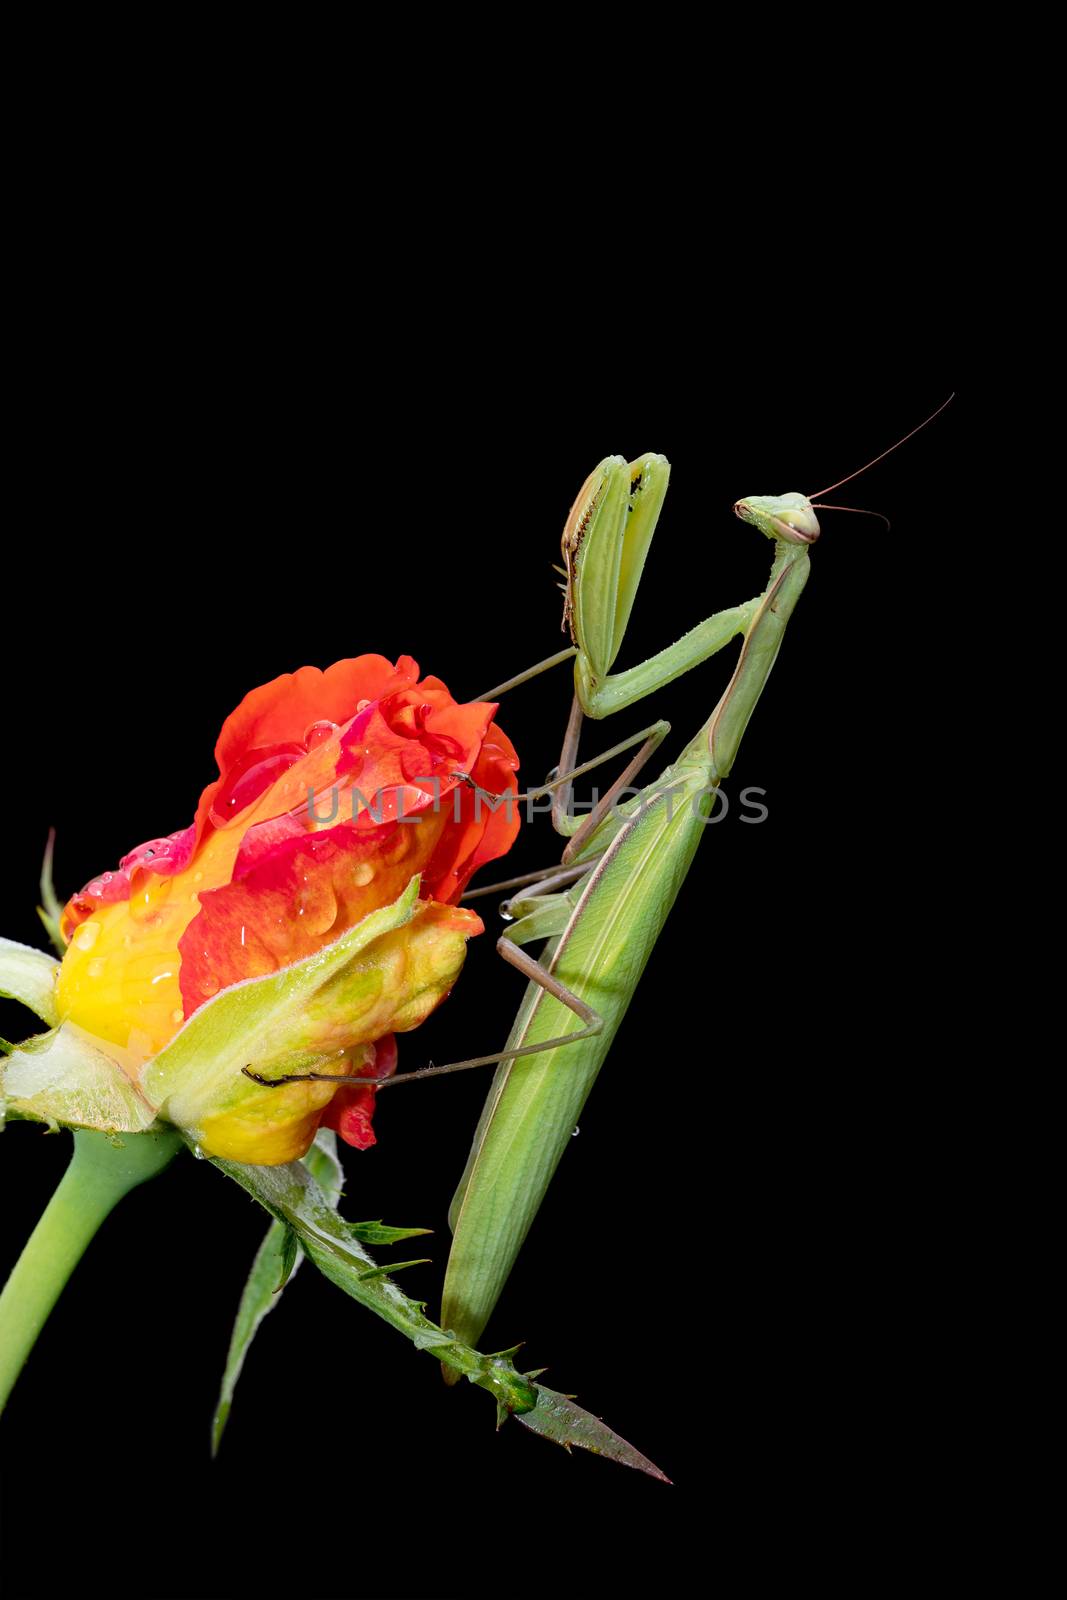 Praying Mantis on a Rosebud by whitechild